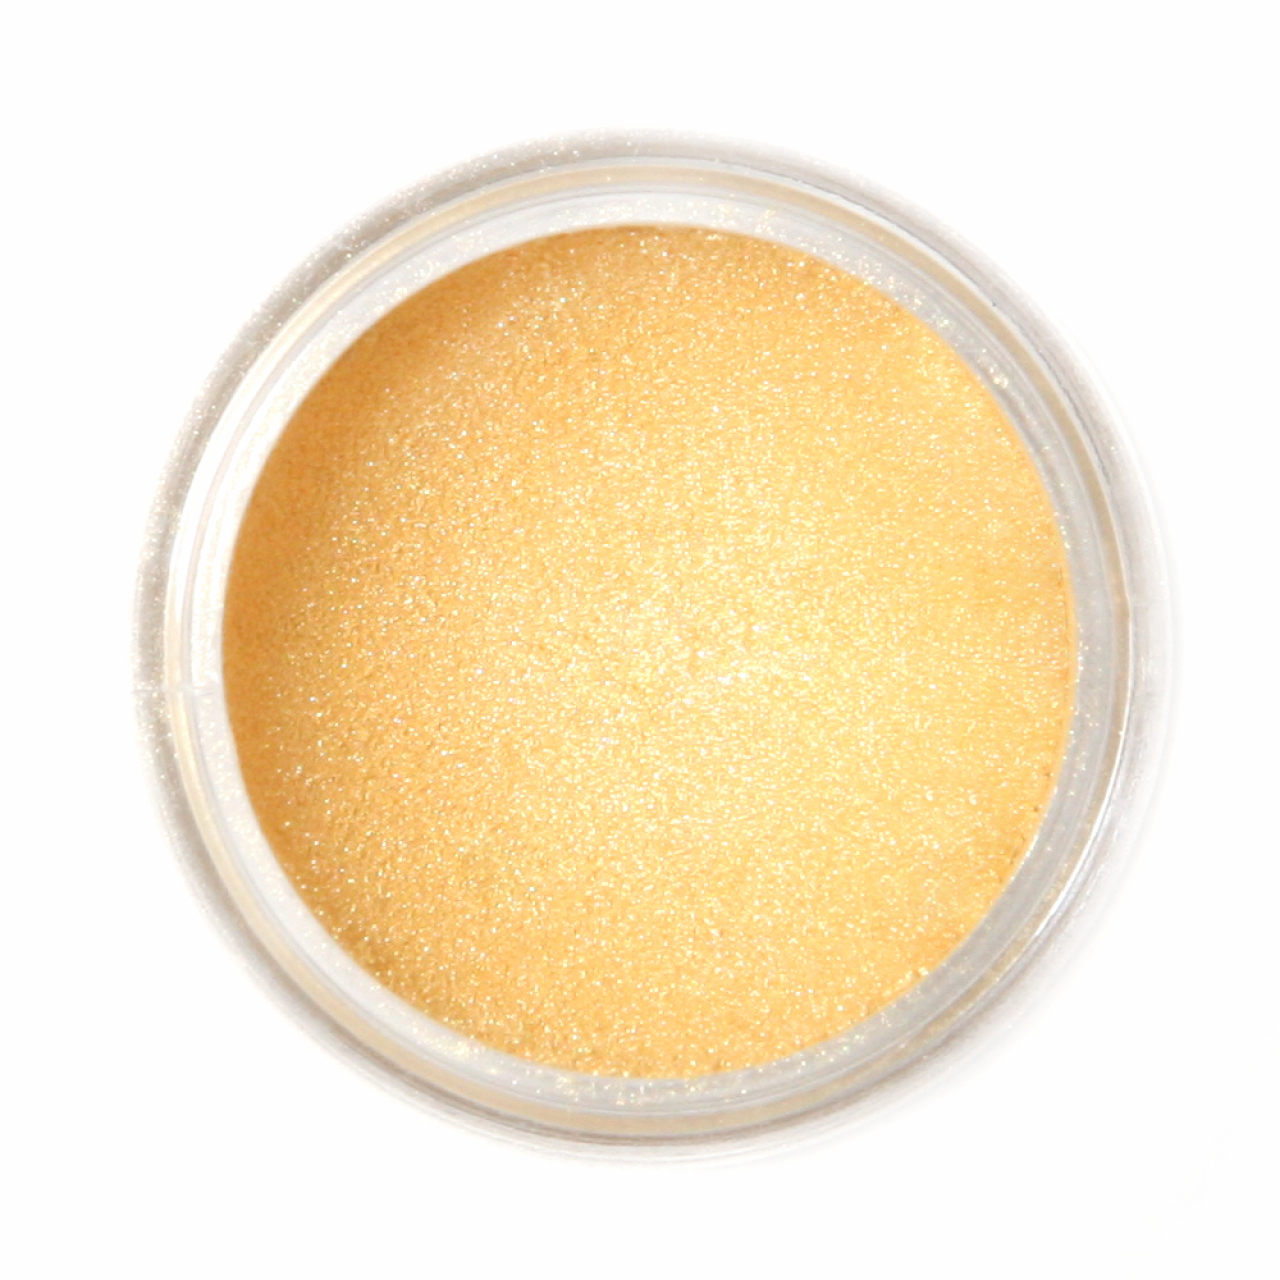 Fractal - SuPearl Ételdekorációs selyempor - Arany Homok ( Golden Shine ) - 3,5g